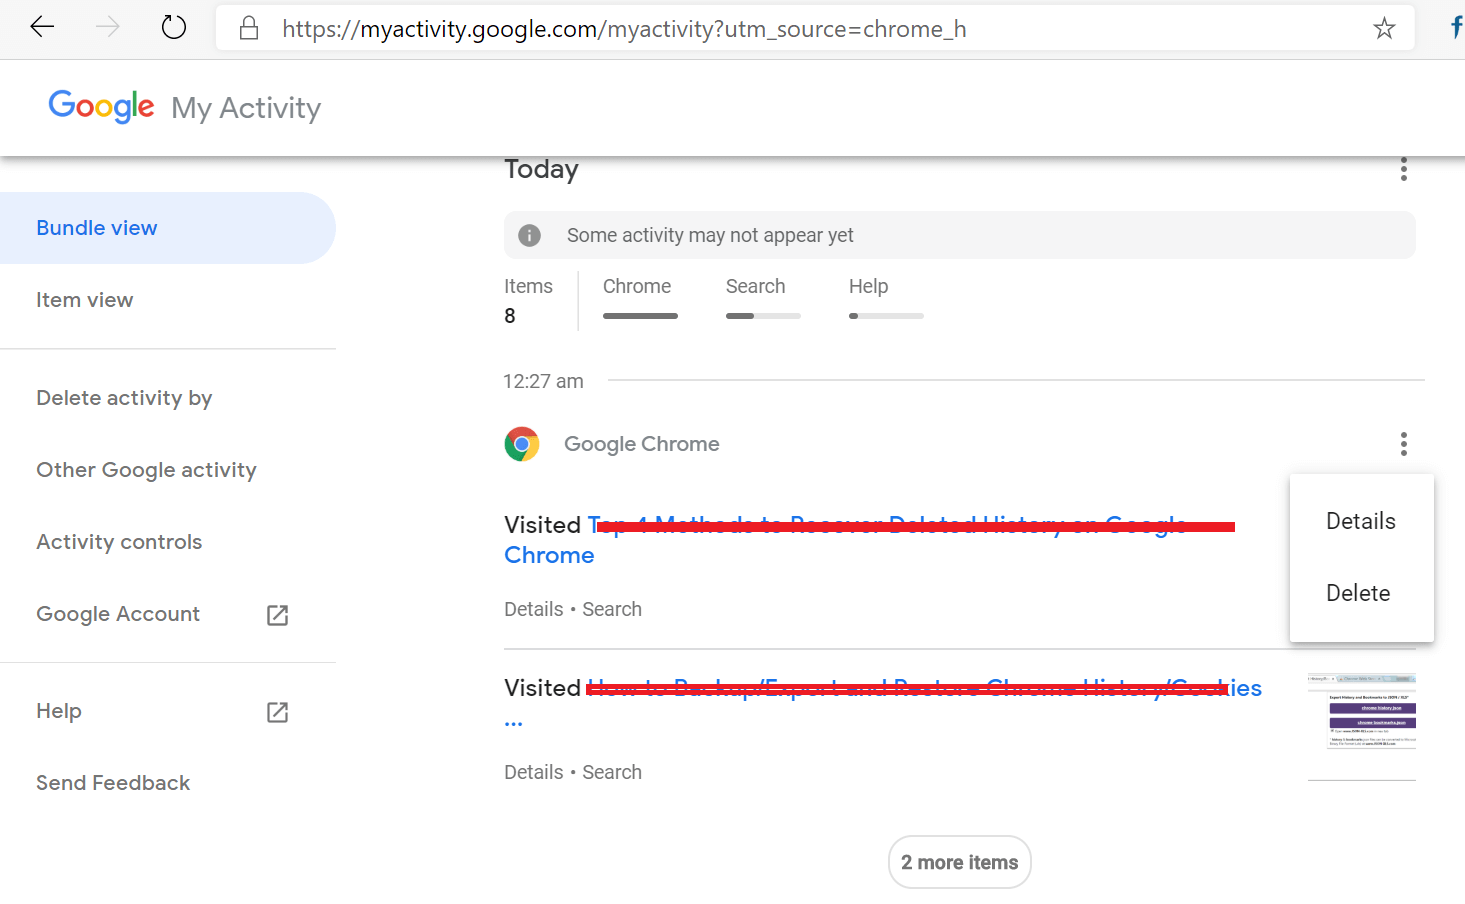 Tarkastele Google Chromen MY Activity Tool -historiaa